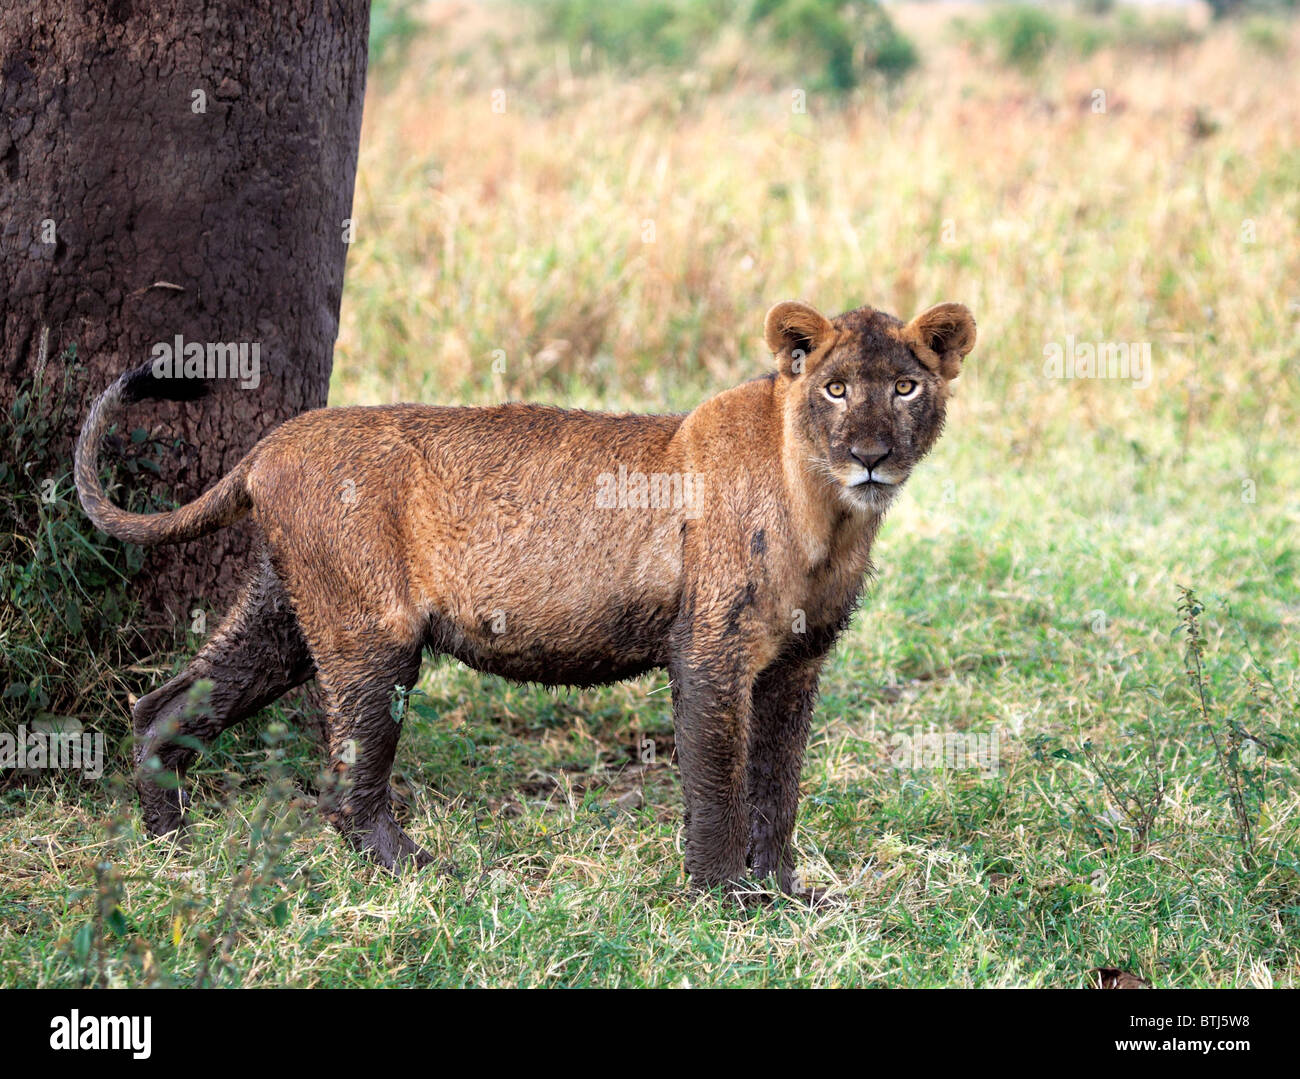 Lion (Panthera leo), Kidepo national park, Uganda, East Africa Stock Photo